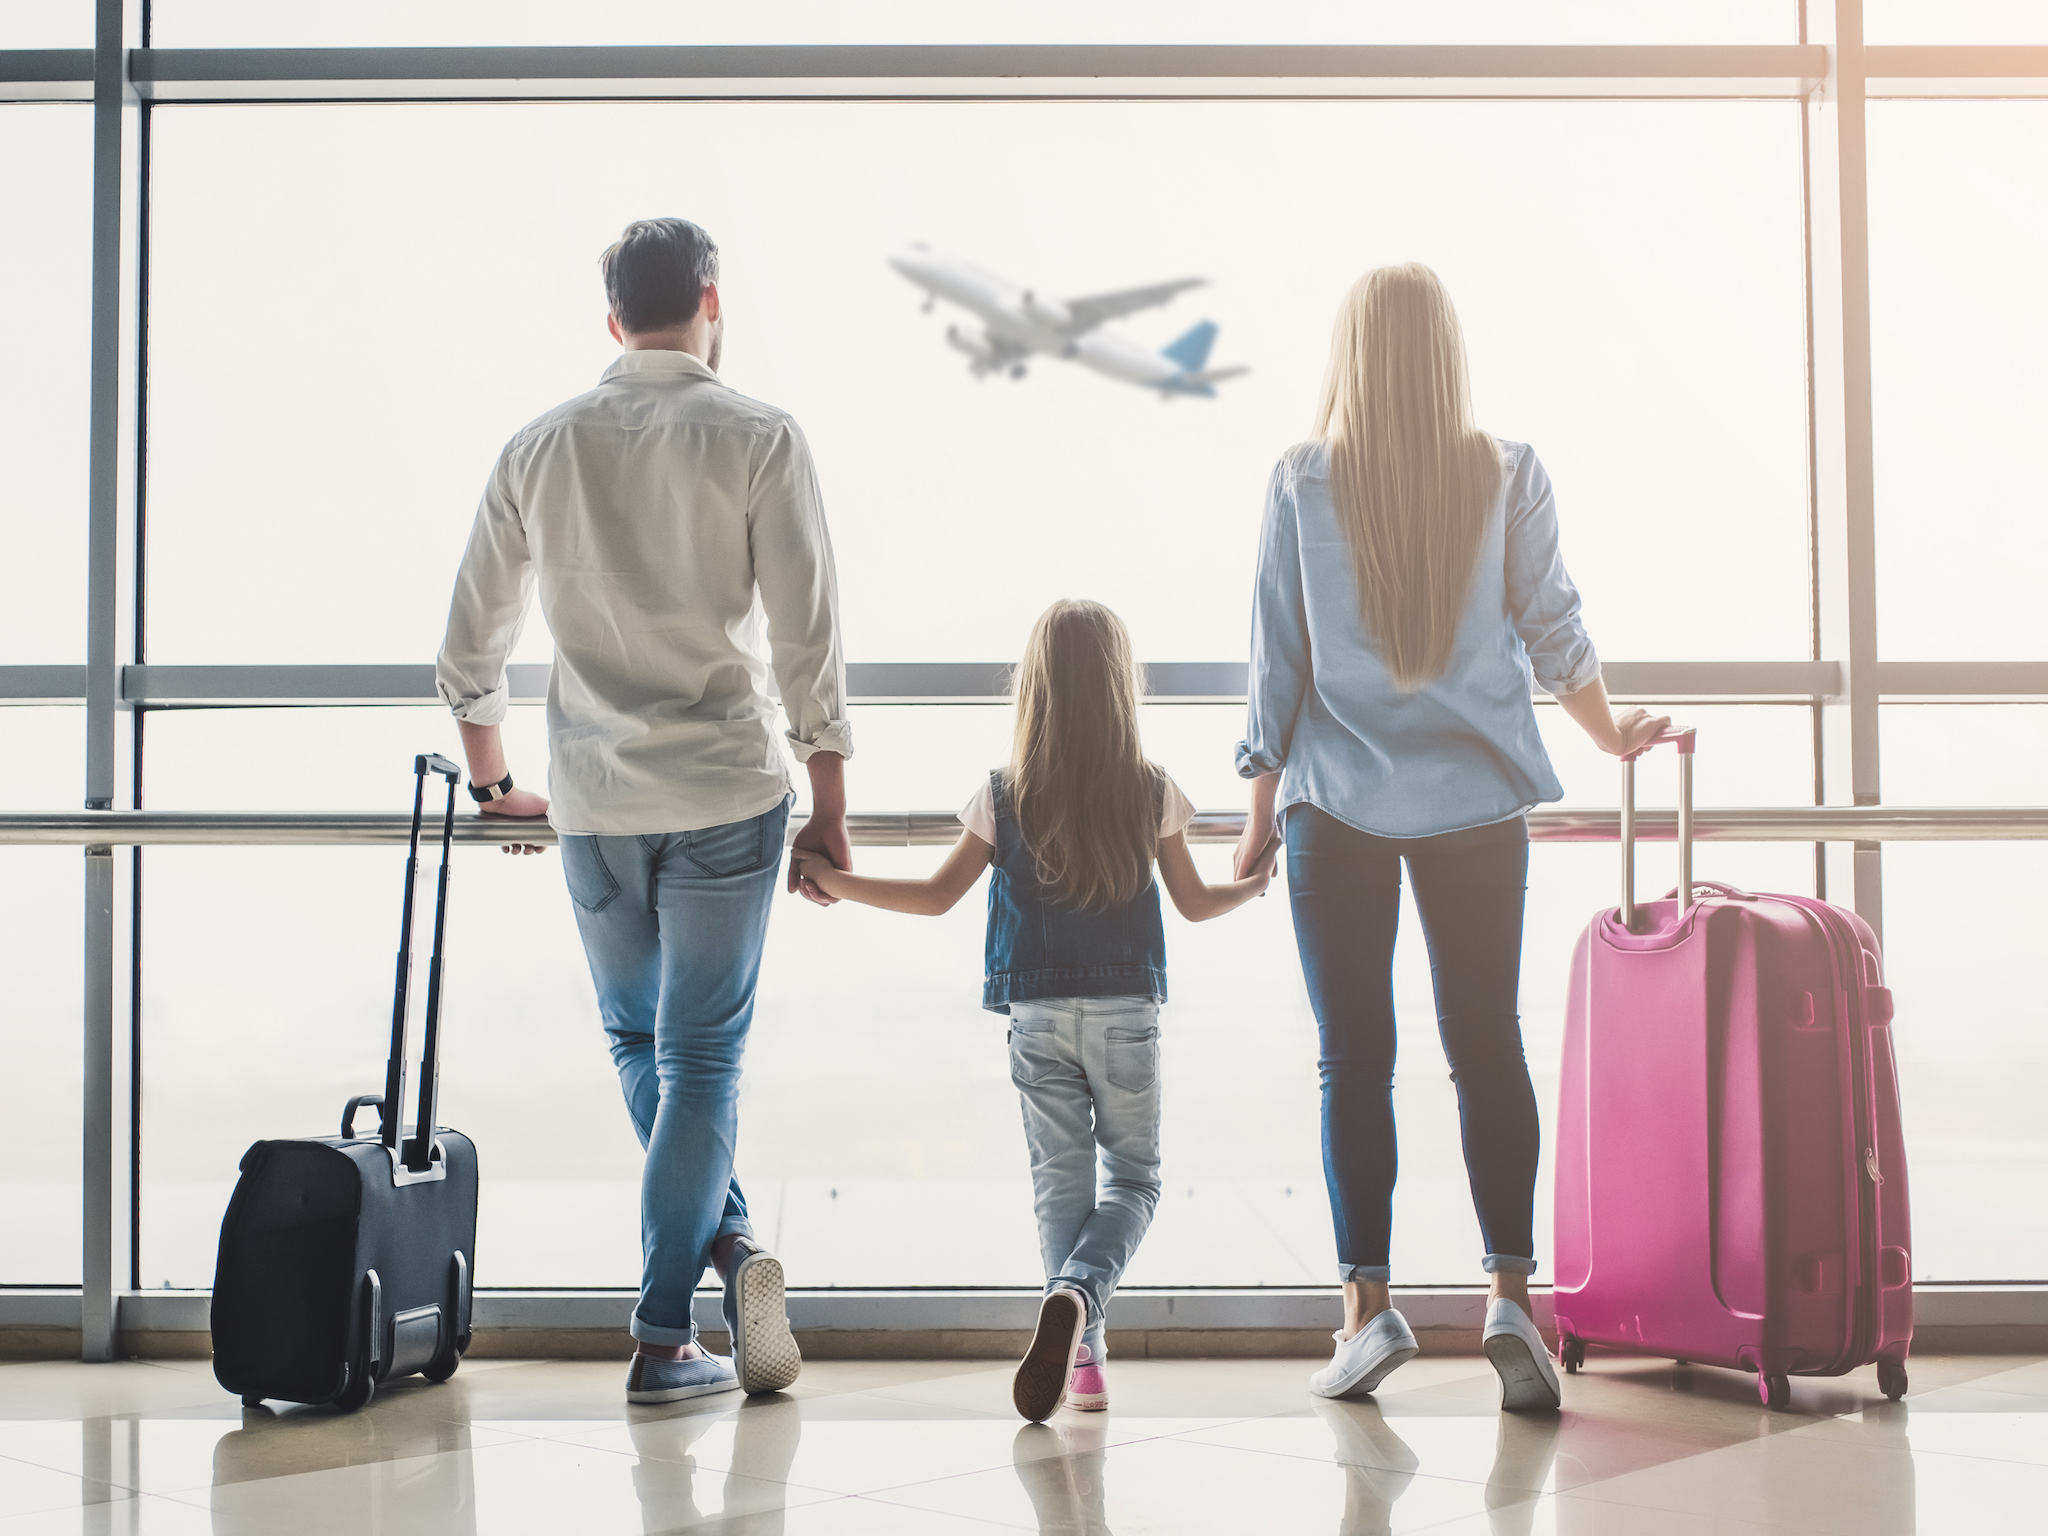 Приехать из заграницы. Семья в аэропорту. Семья с чемоданами. Семья с чемоданами в аэропорту. Человек с чемоданом и ребенок.